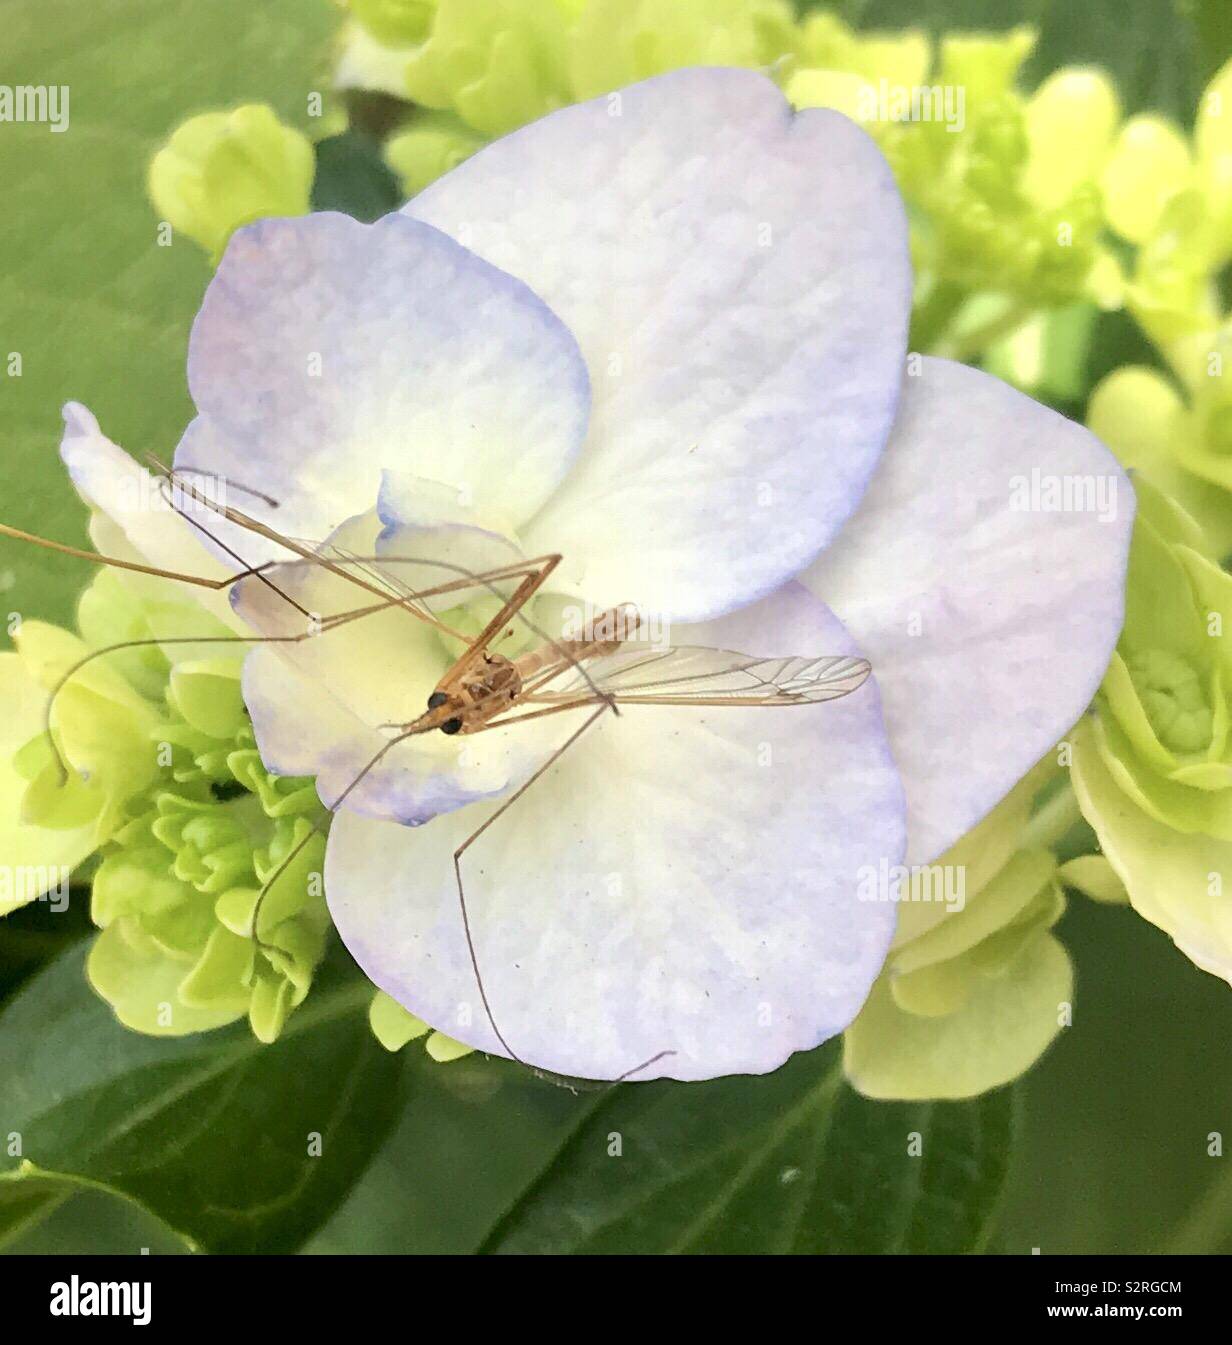 Un insecte volant qui a atterri sur une fleur blanche dans le jardin Banque D'Images